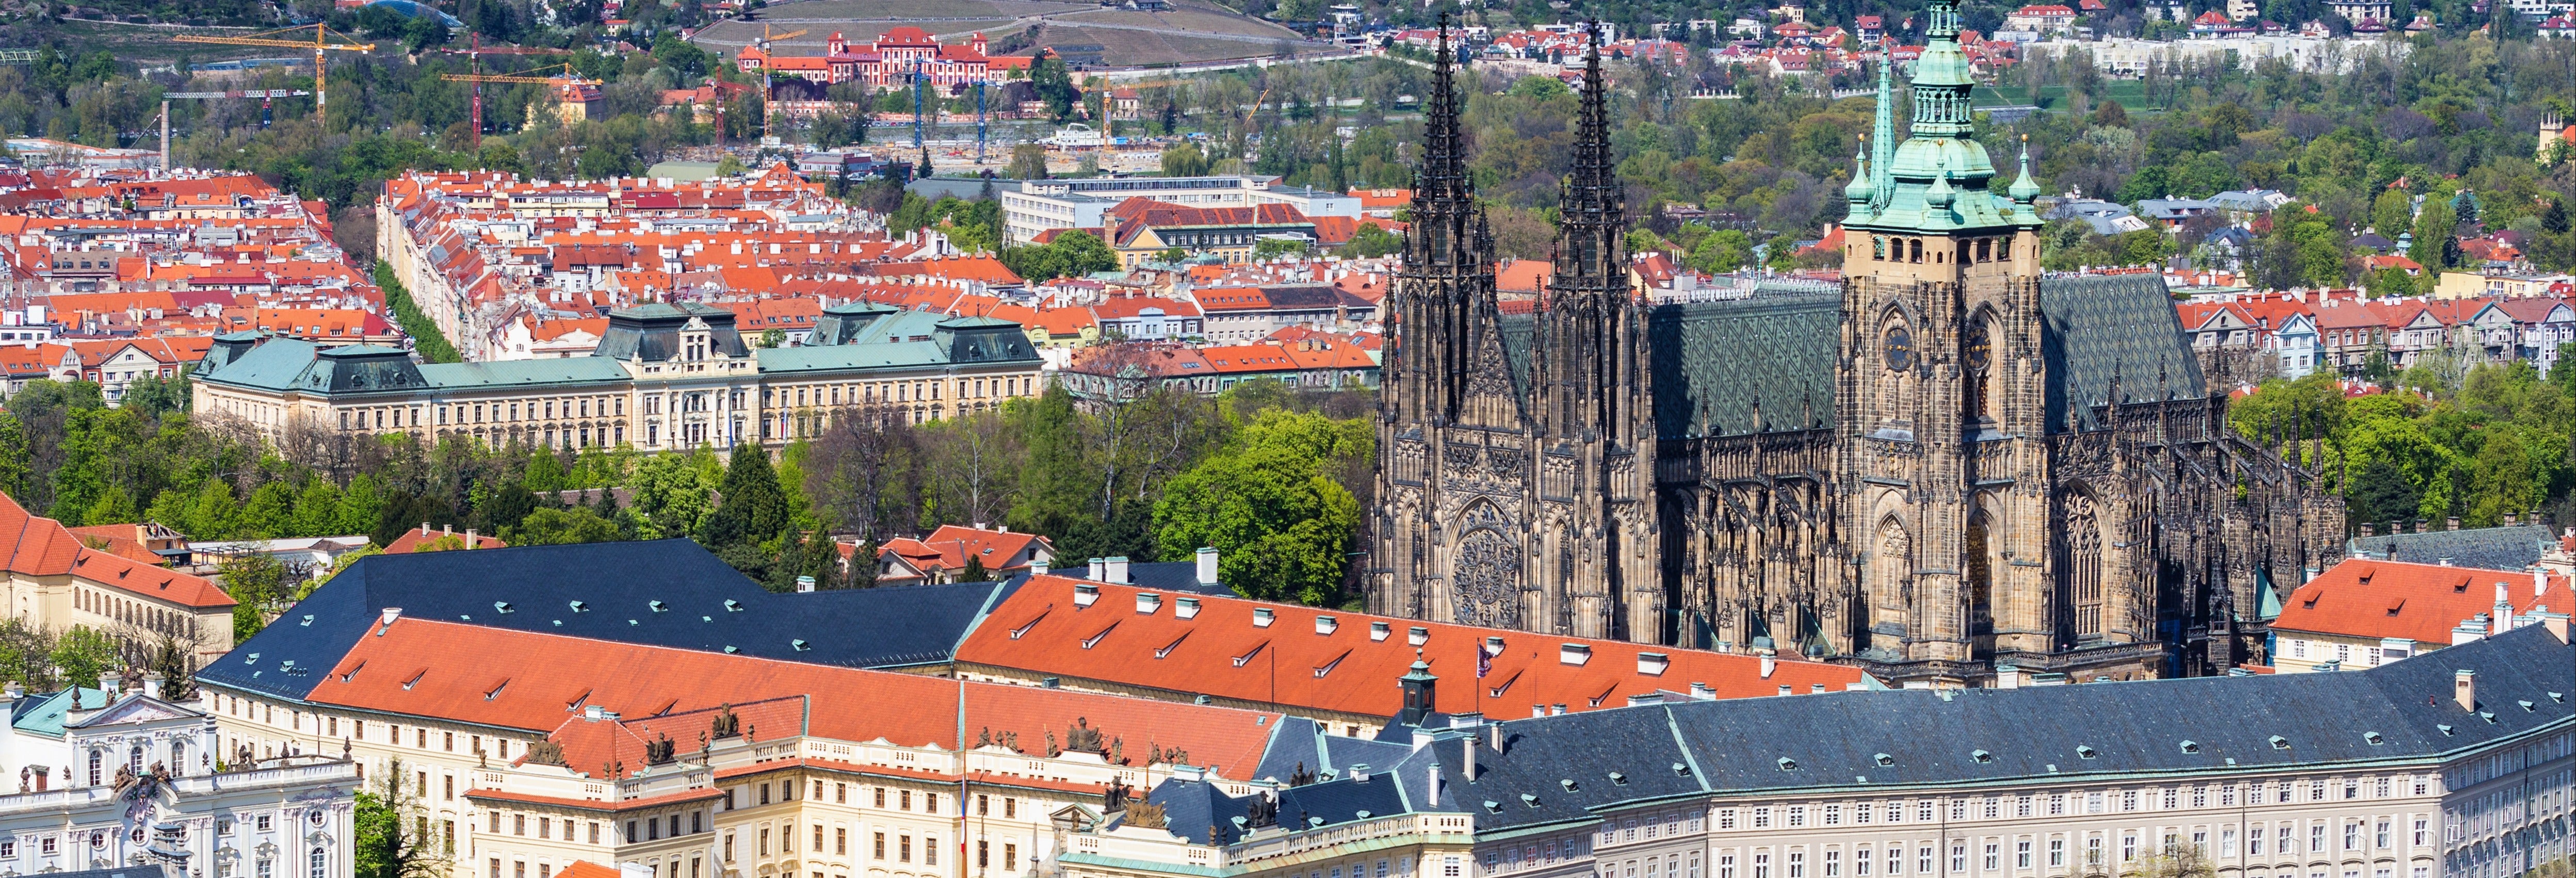 Tour guiado pelo castelo de Praga